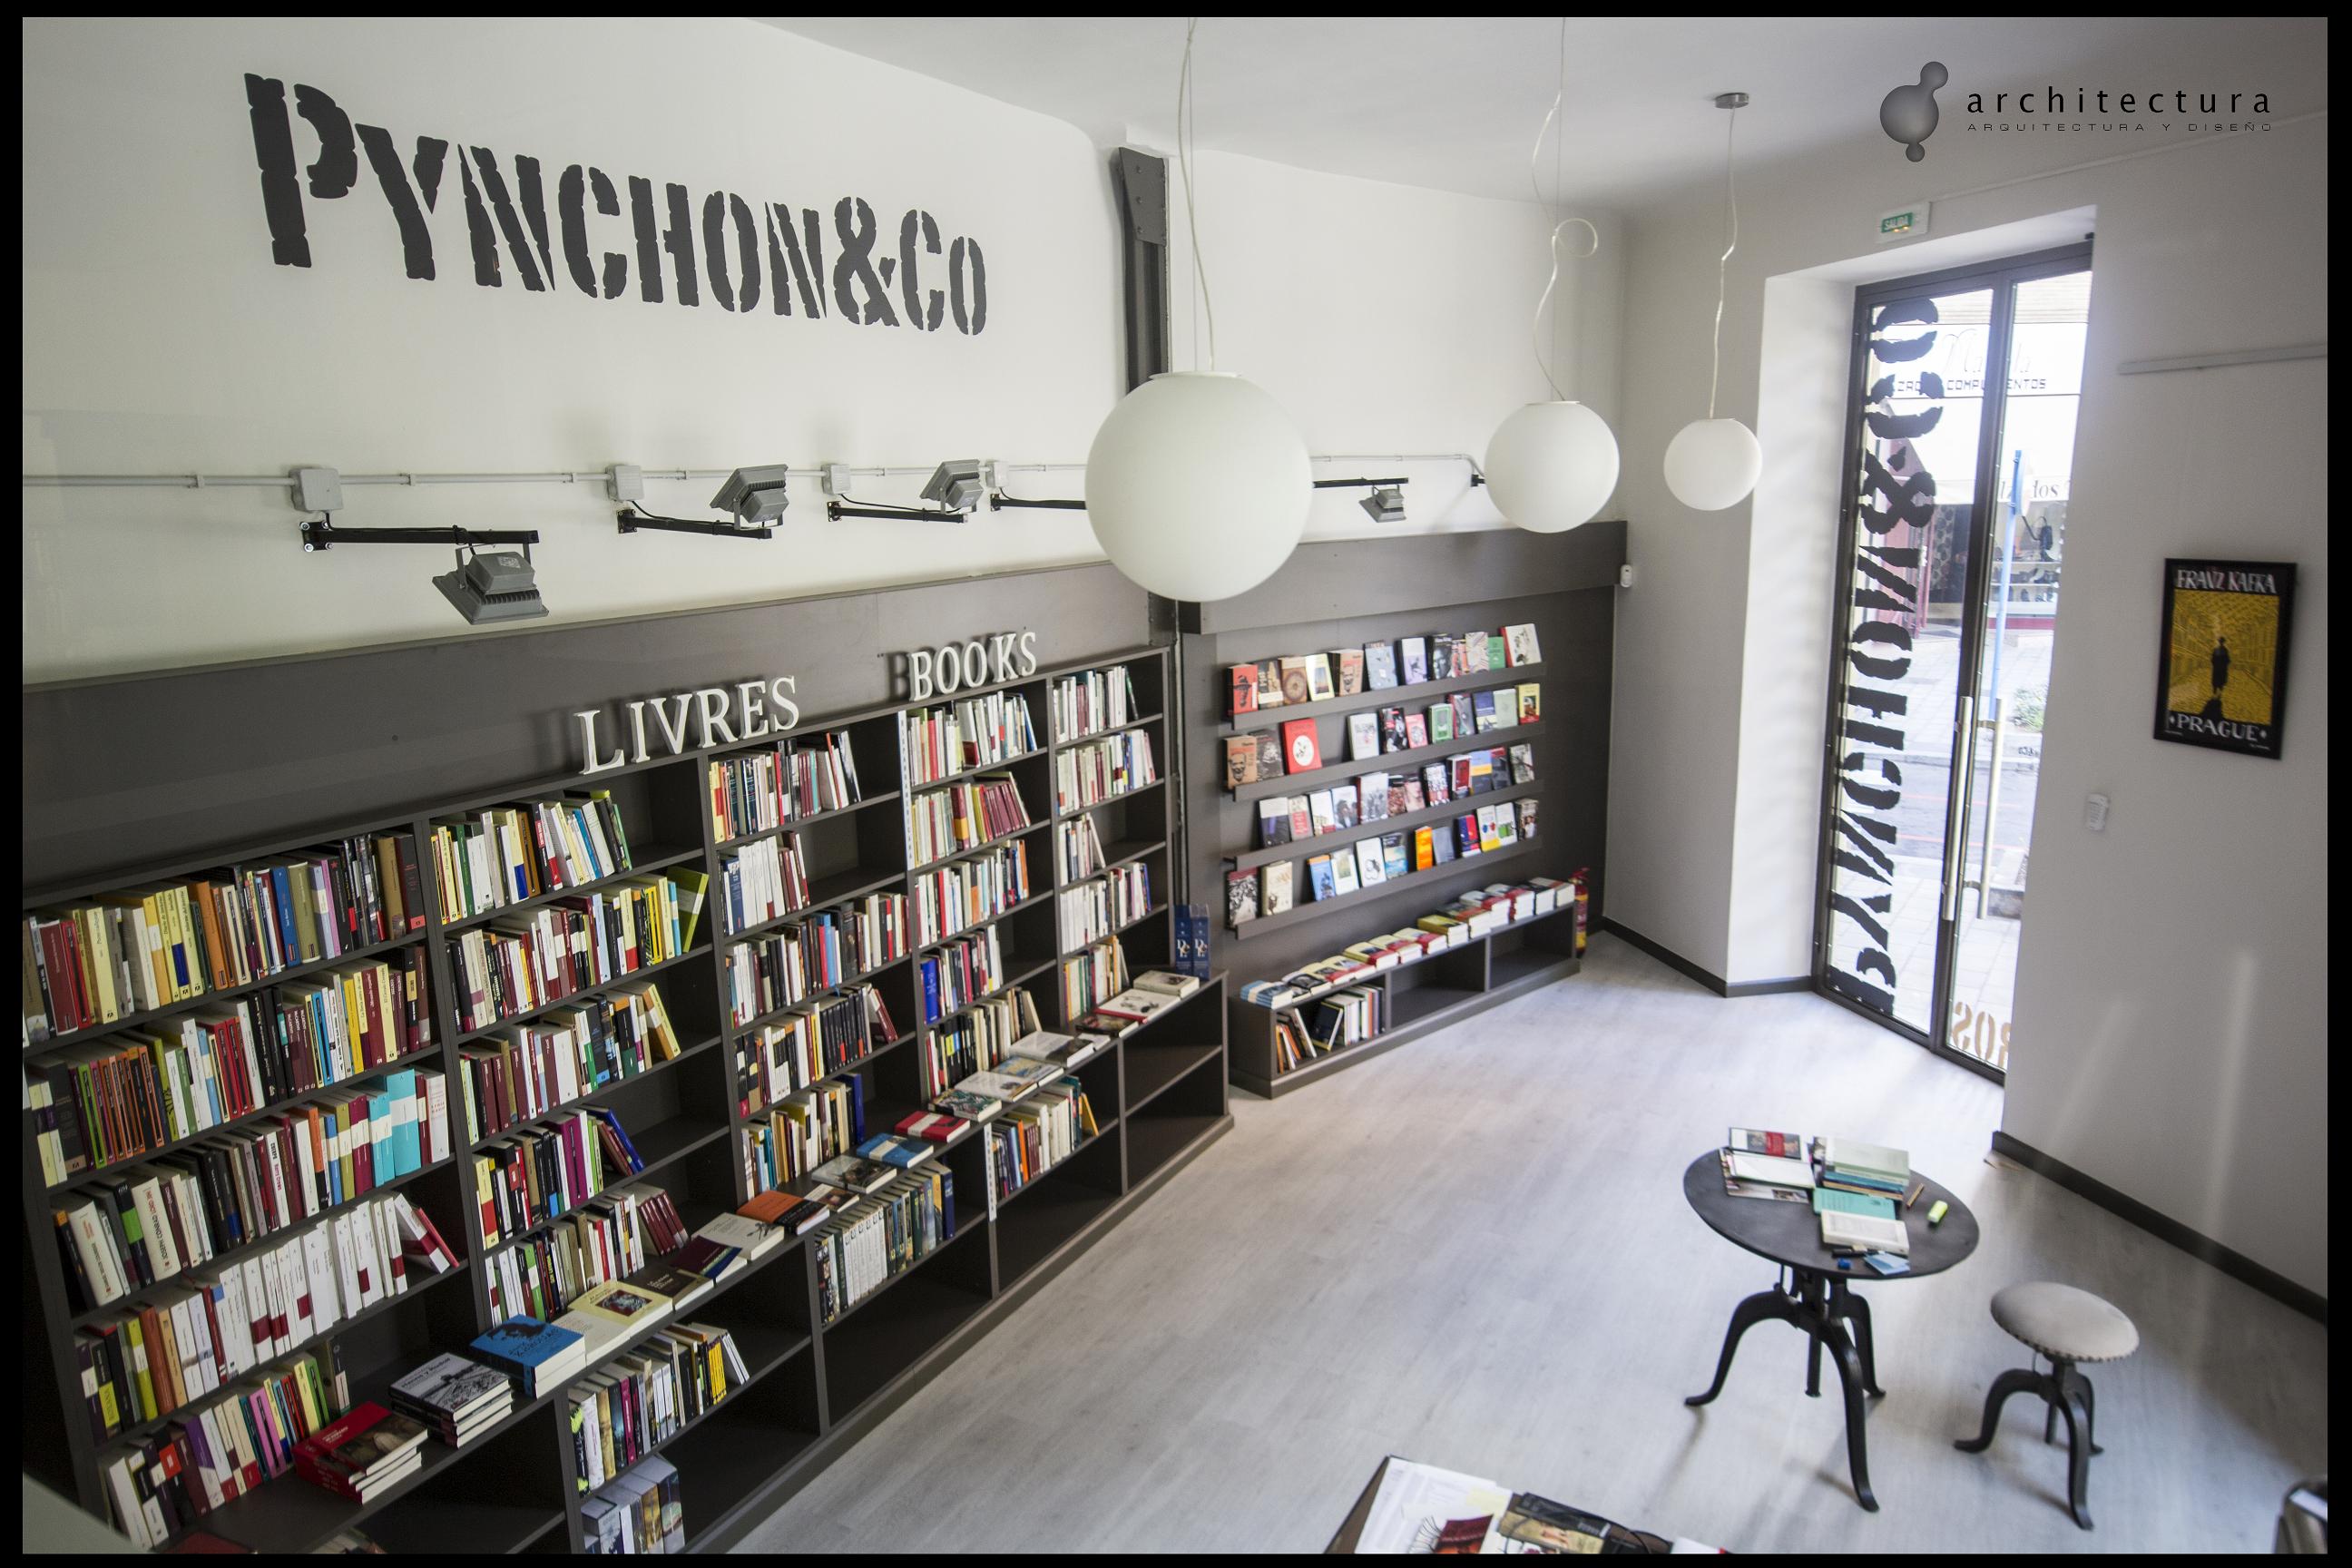 Librería Pynchon & Co.